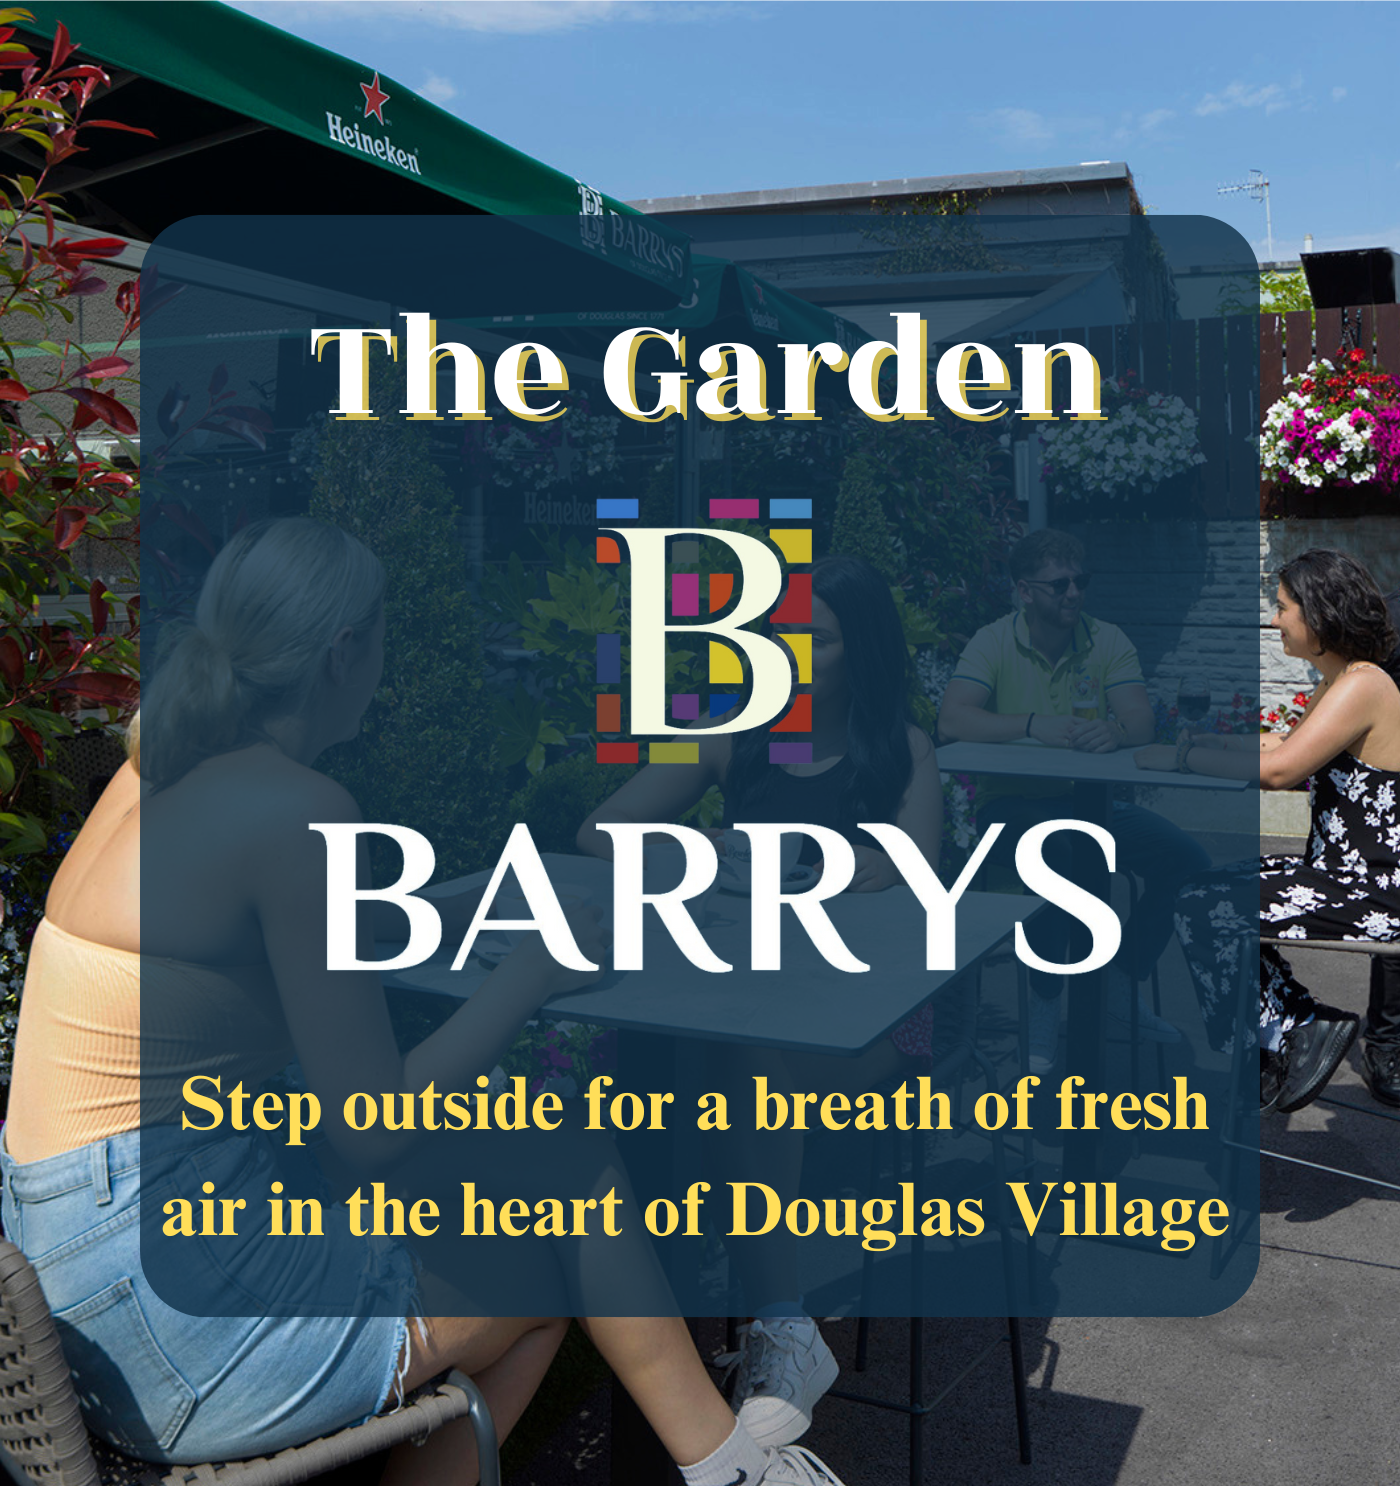 Barrys Garden Poster